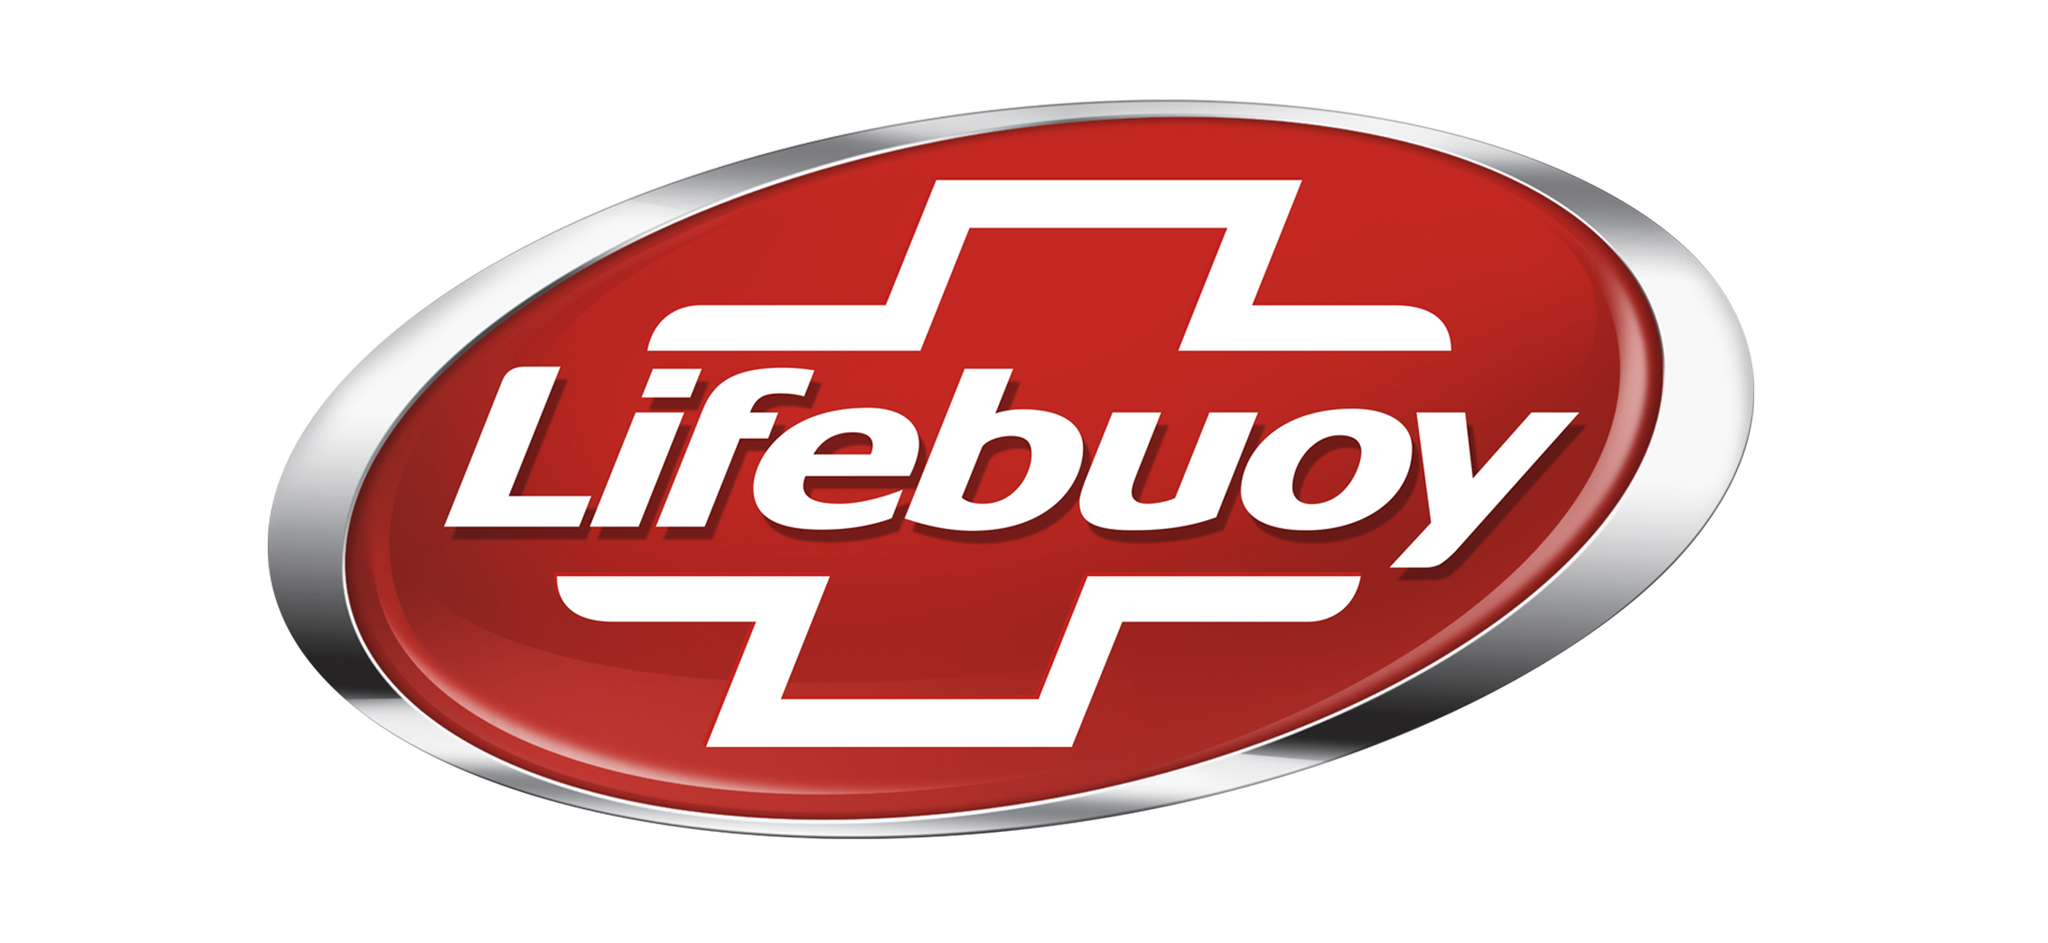 Lifebuoy Image